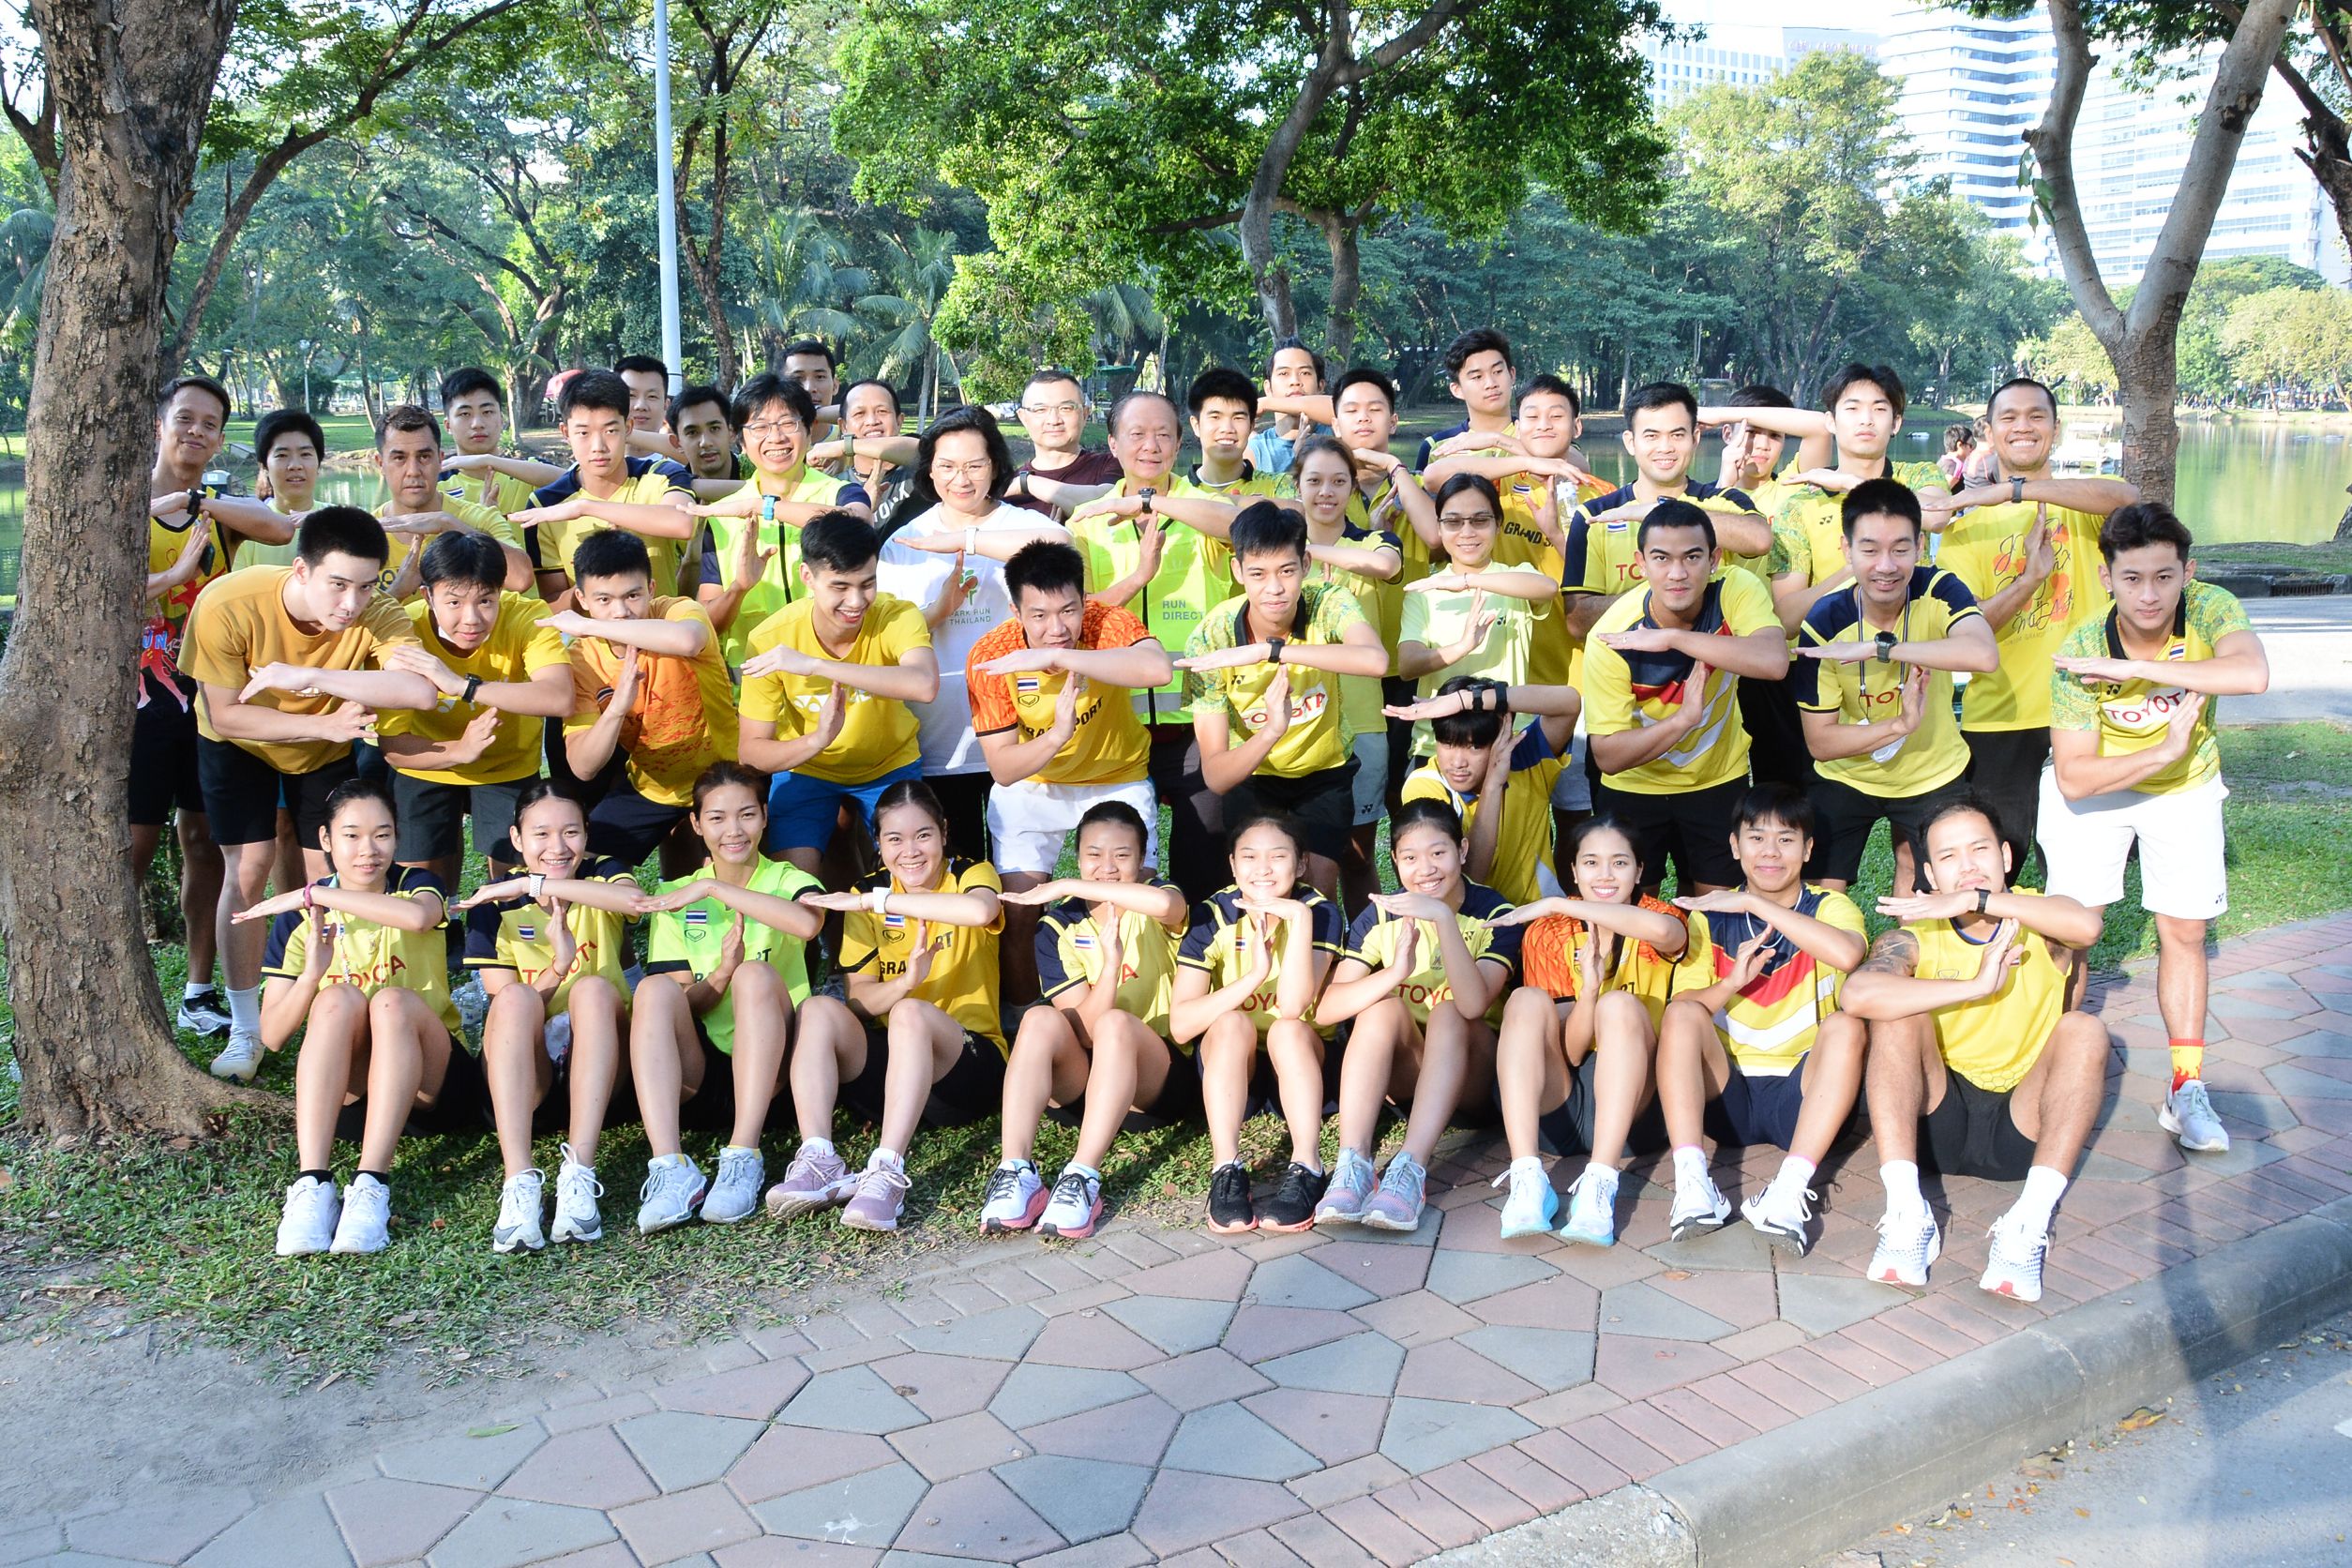 Park Run Thailand  กิจกรรมที่มีแนวคิดให้เป็นงานวิ่งที่ทุกคนร่วมเป็นเจ้าของ